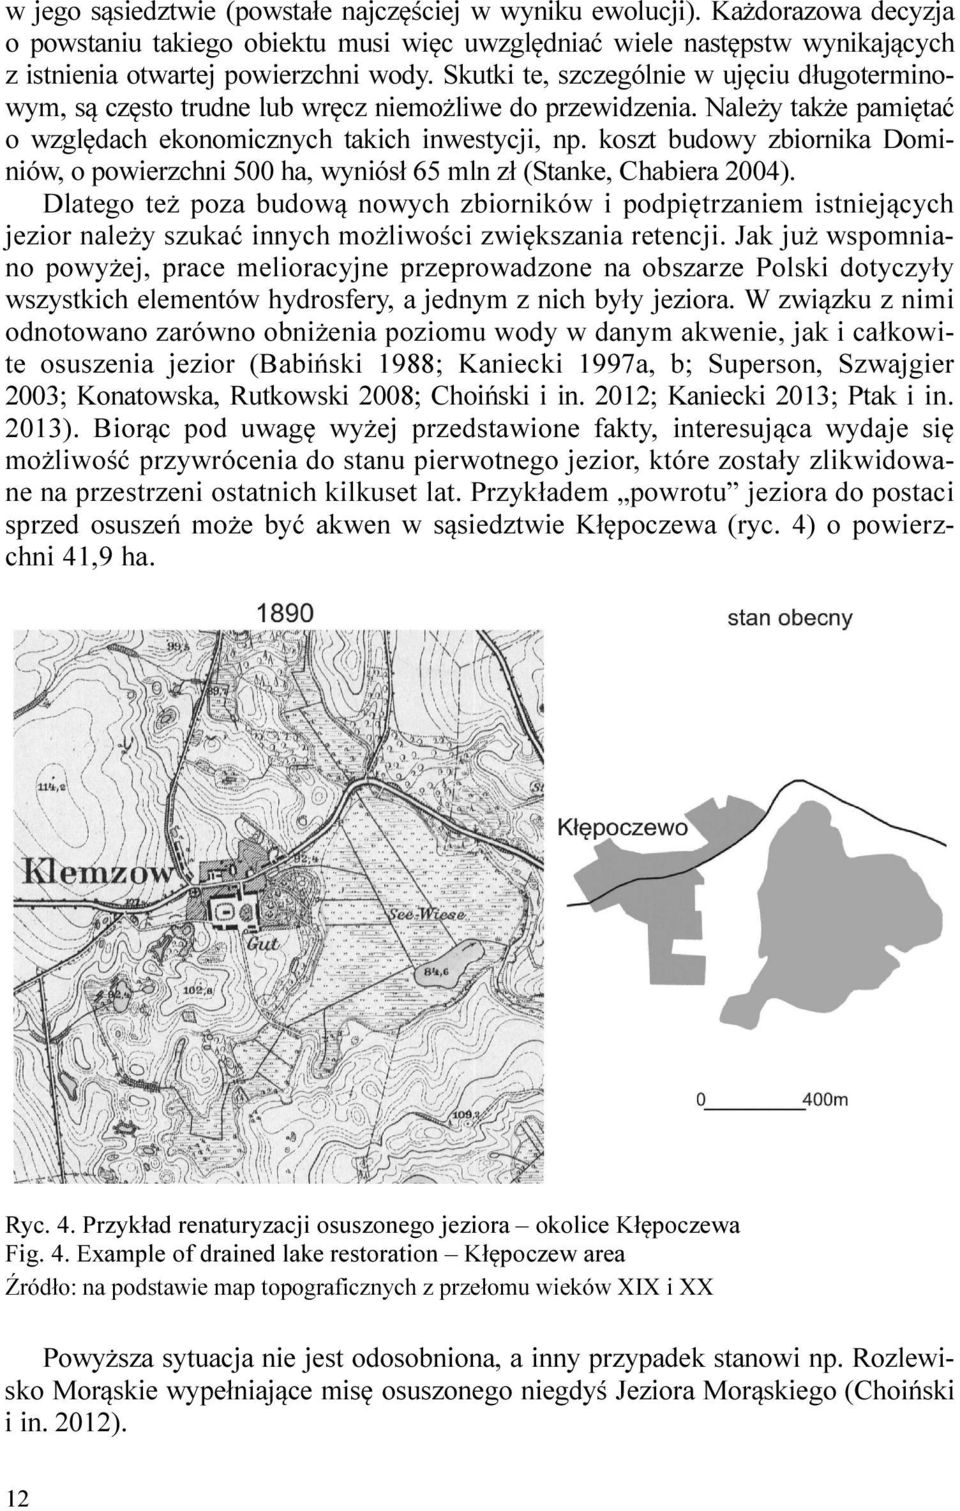 koszt budowy zbiornika Dominiów, o powierzchni 500 ha, wyniósł 65 mln zł (Stanke, Chabiera 2004).